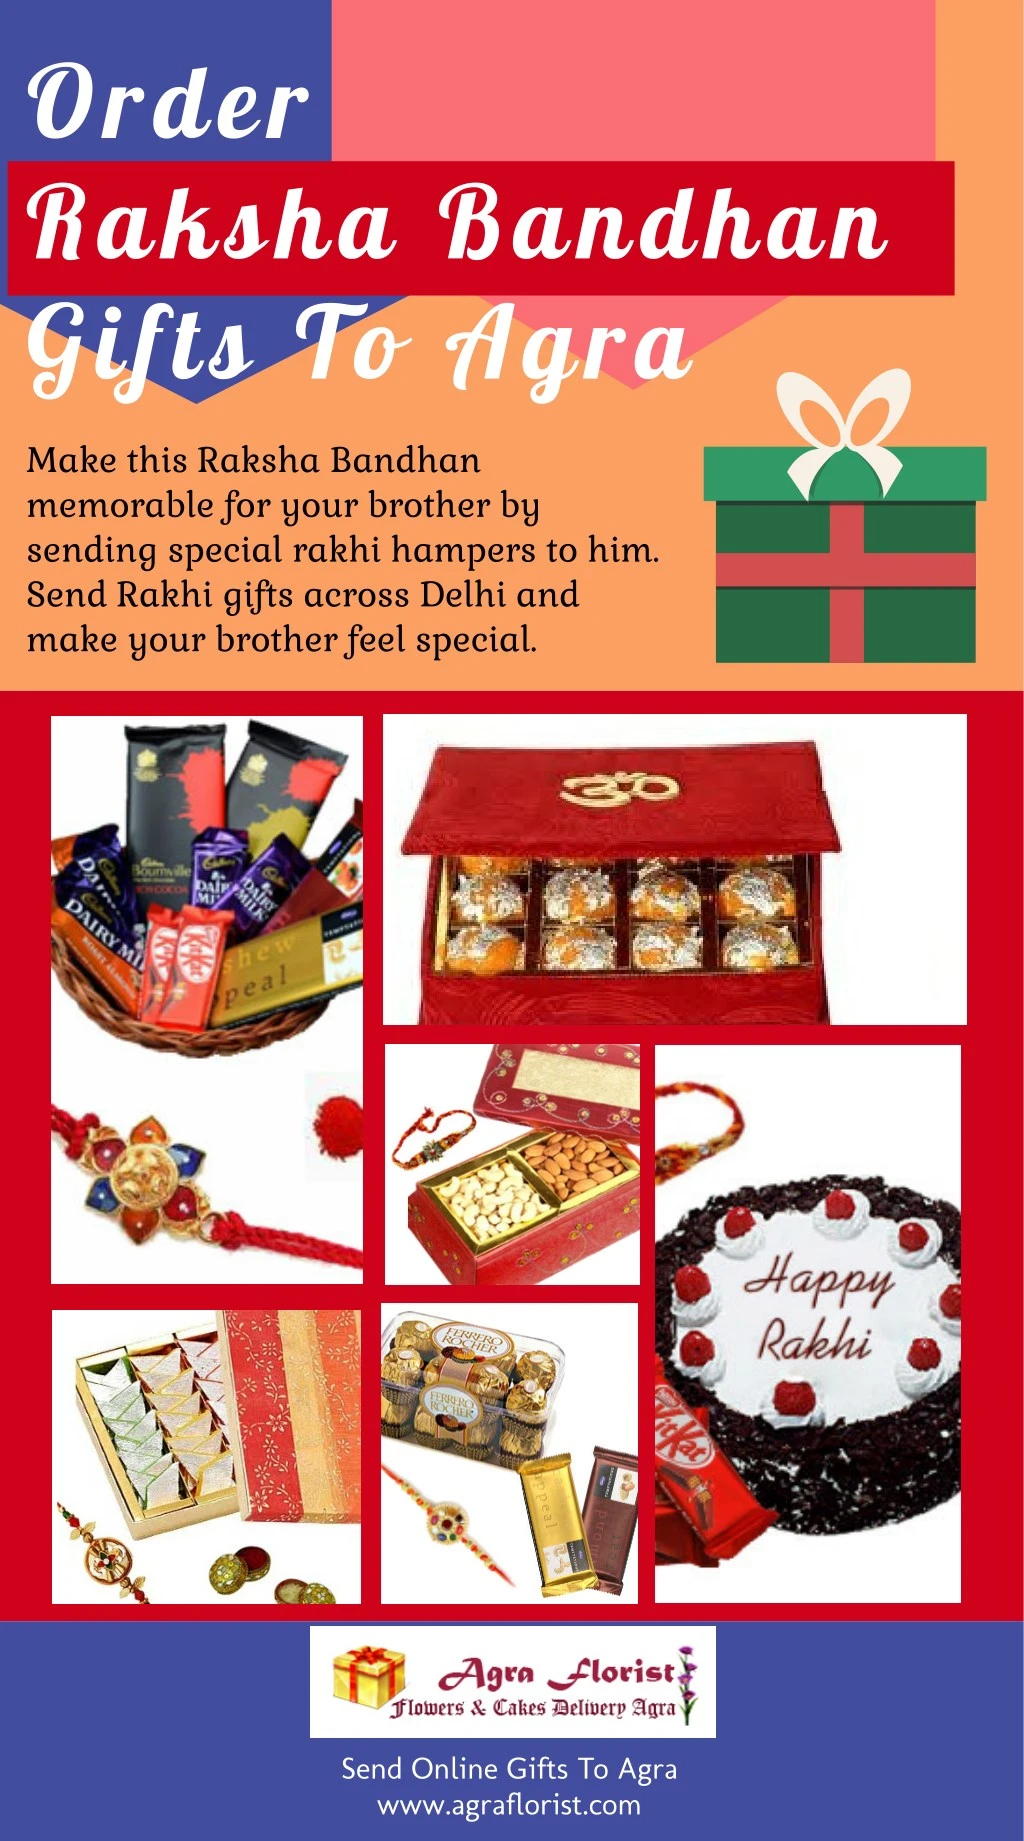 order raksha bandhan gifts to agra